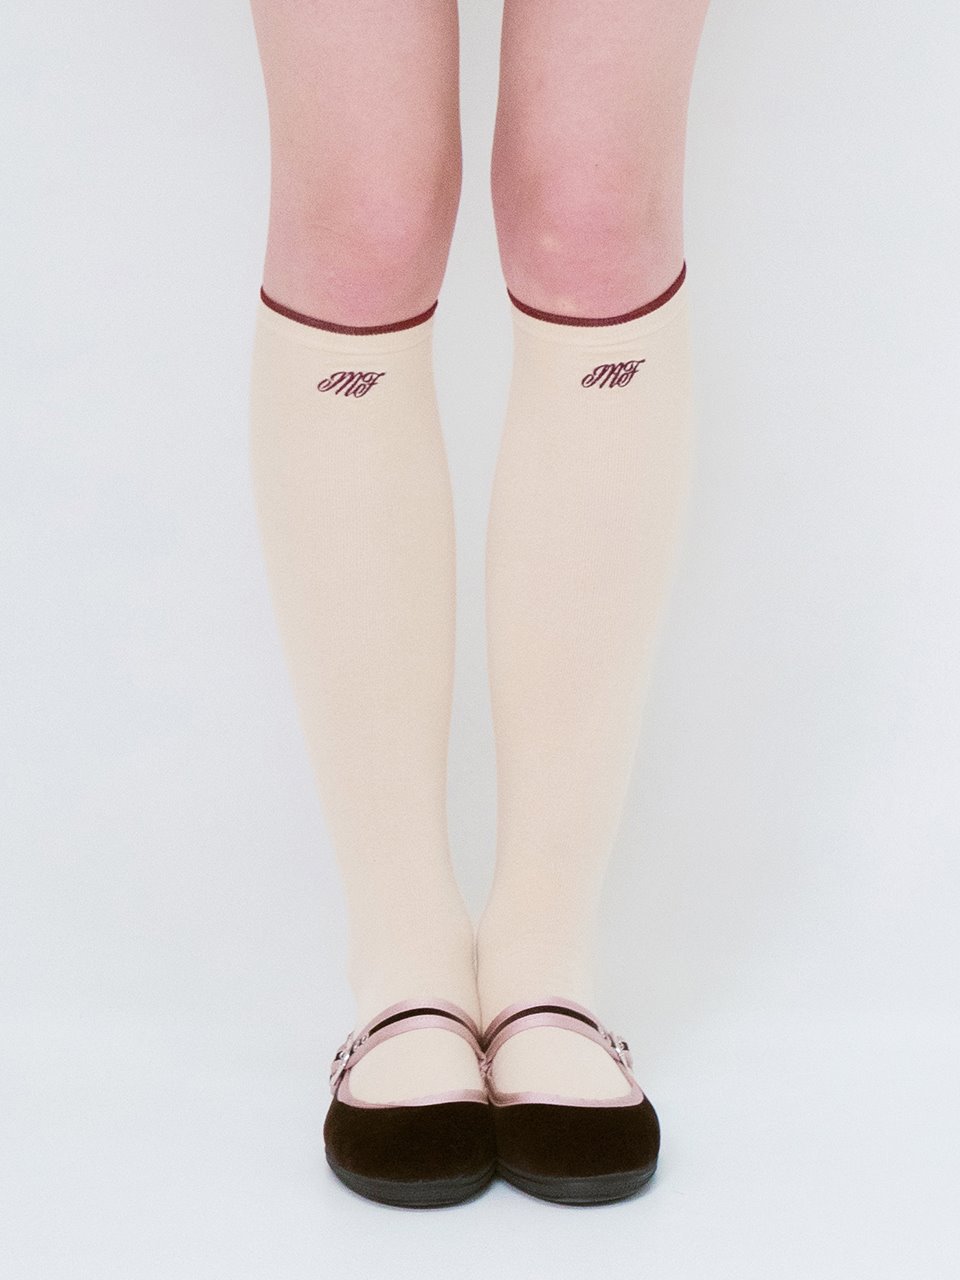 mf logo knee socks (latte)